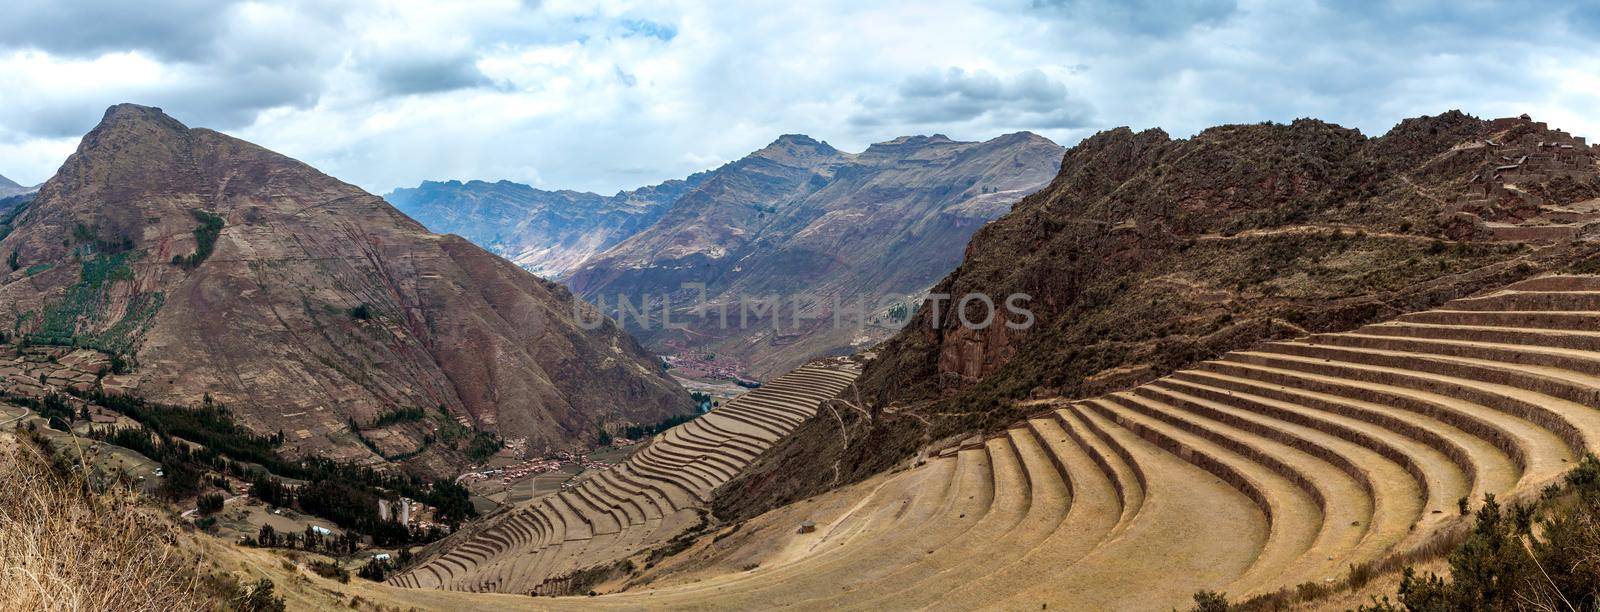 Terraces at Incan ruins in Pesac, Peru by tan4ikk1